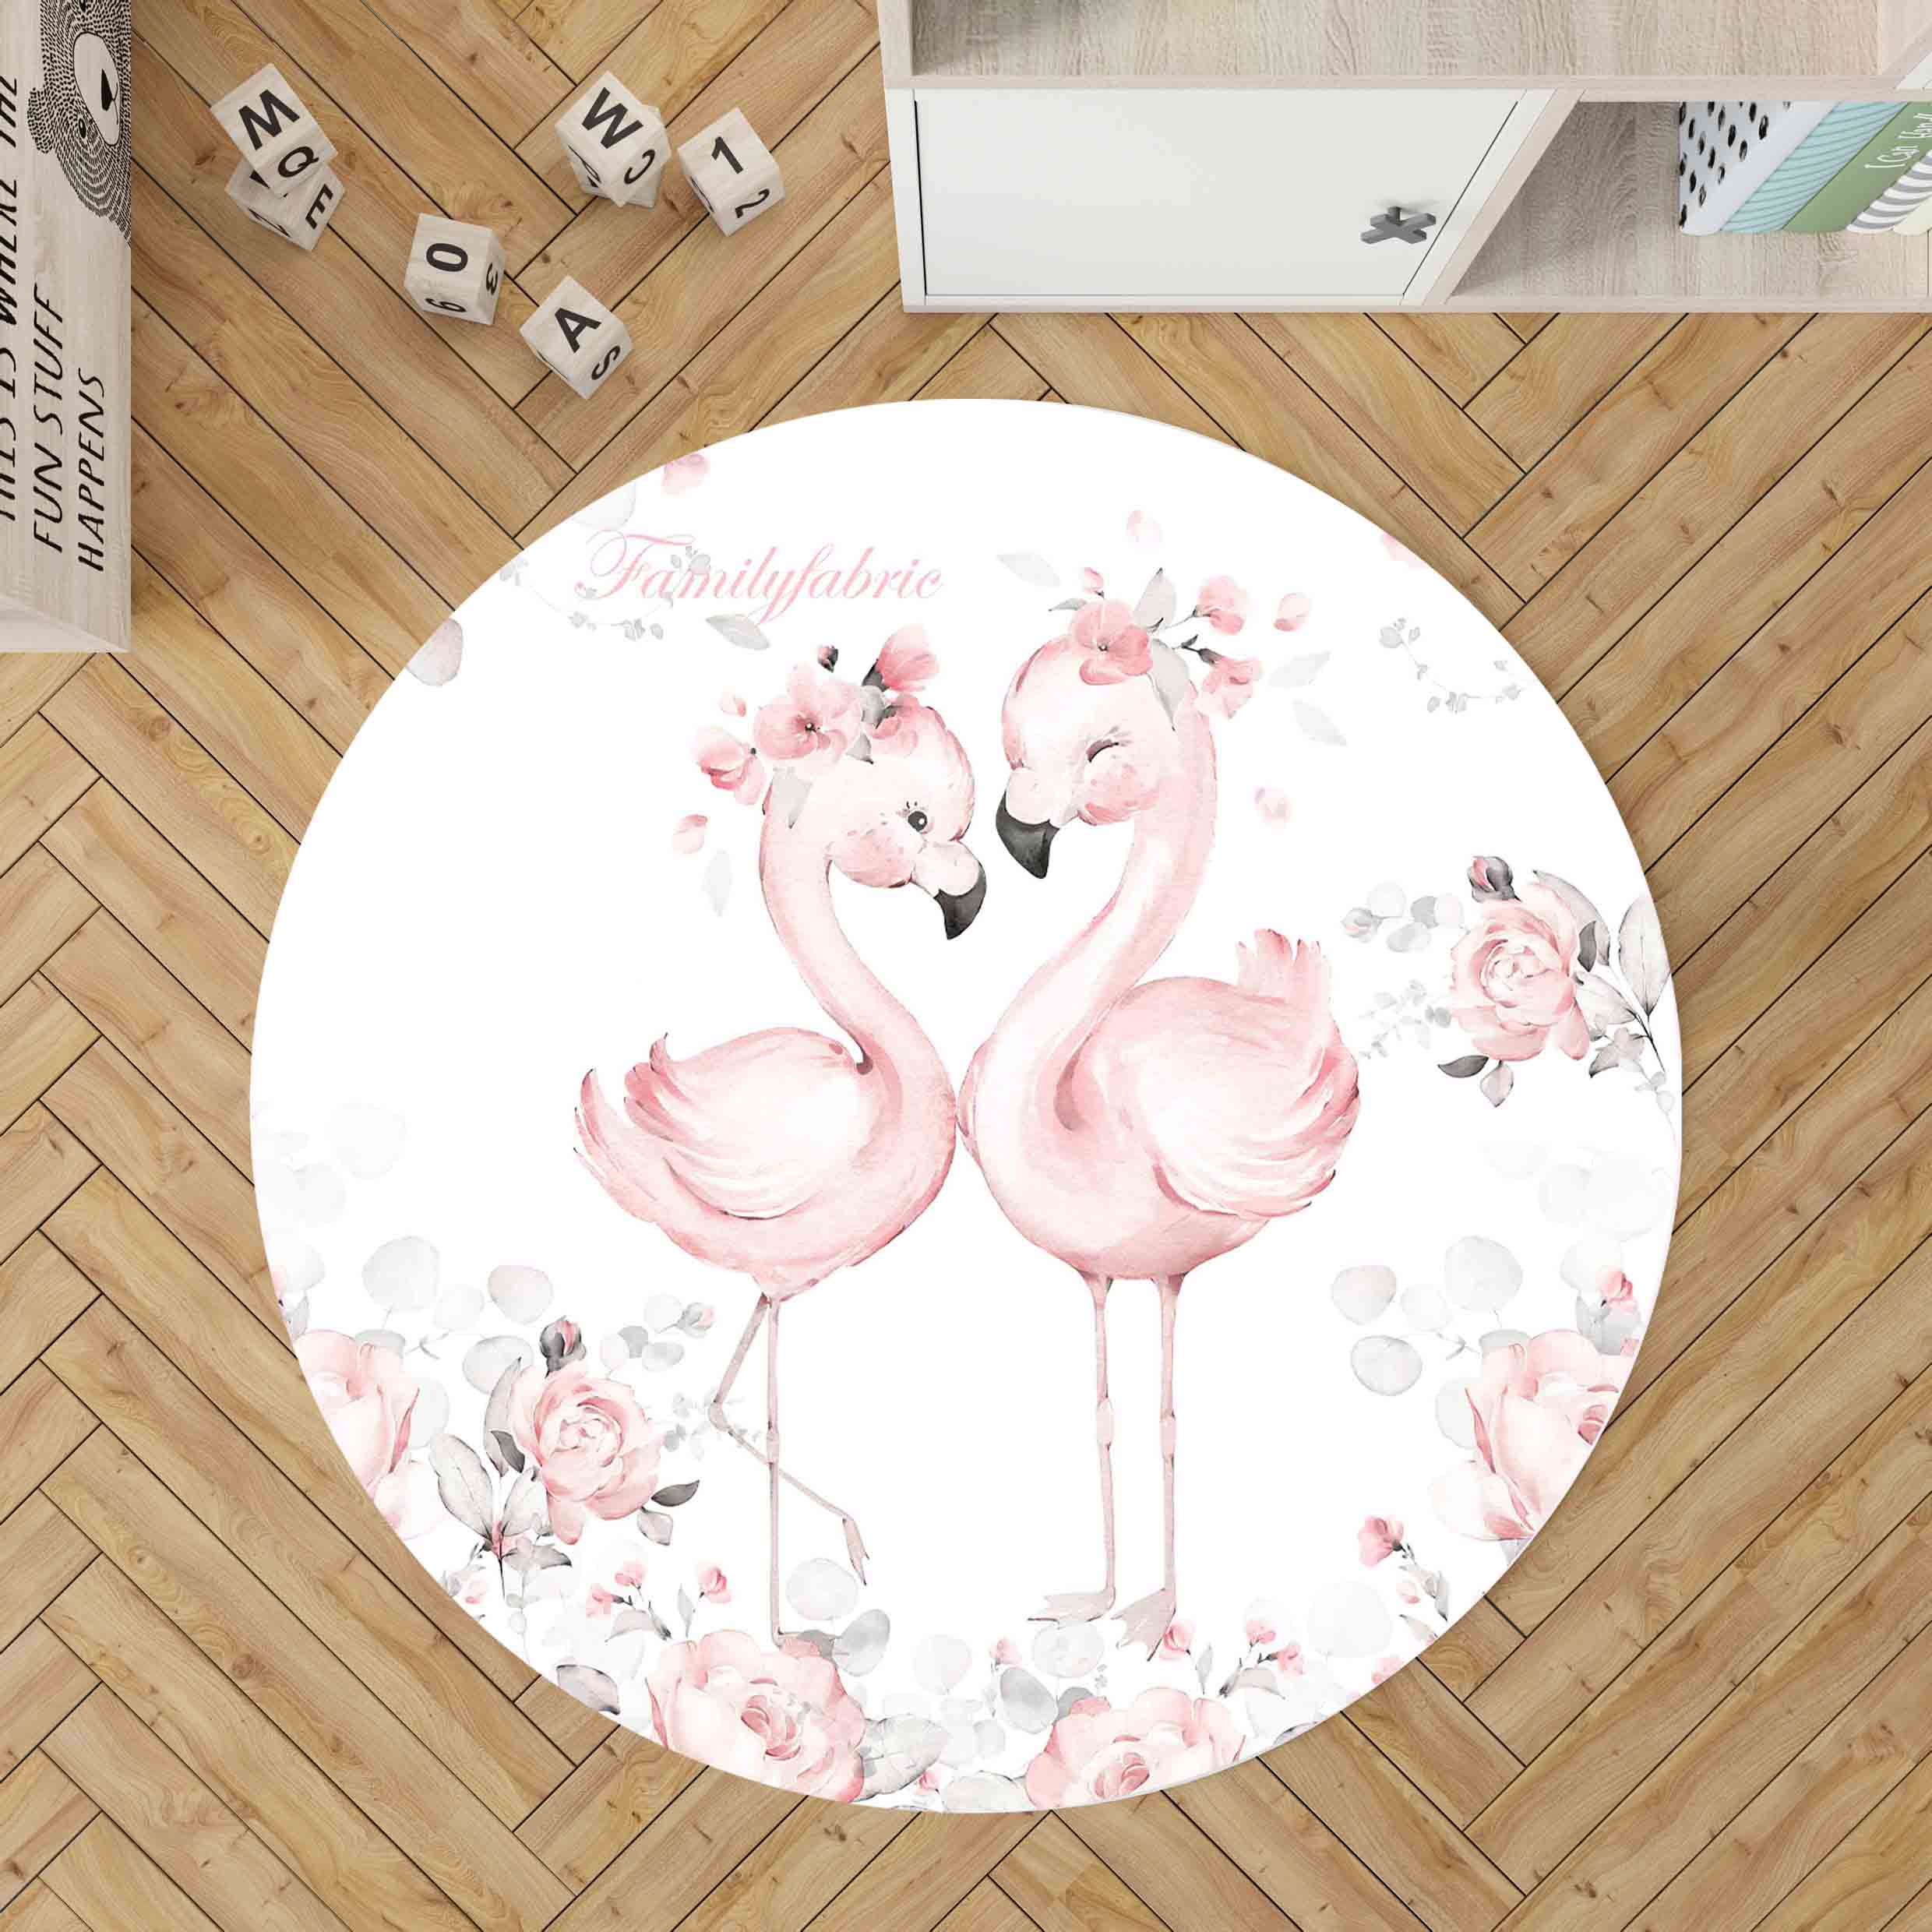 Tapis d'éveil en gaze de coton - rose moyen uni avec decor